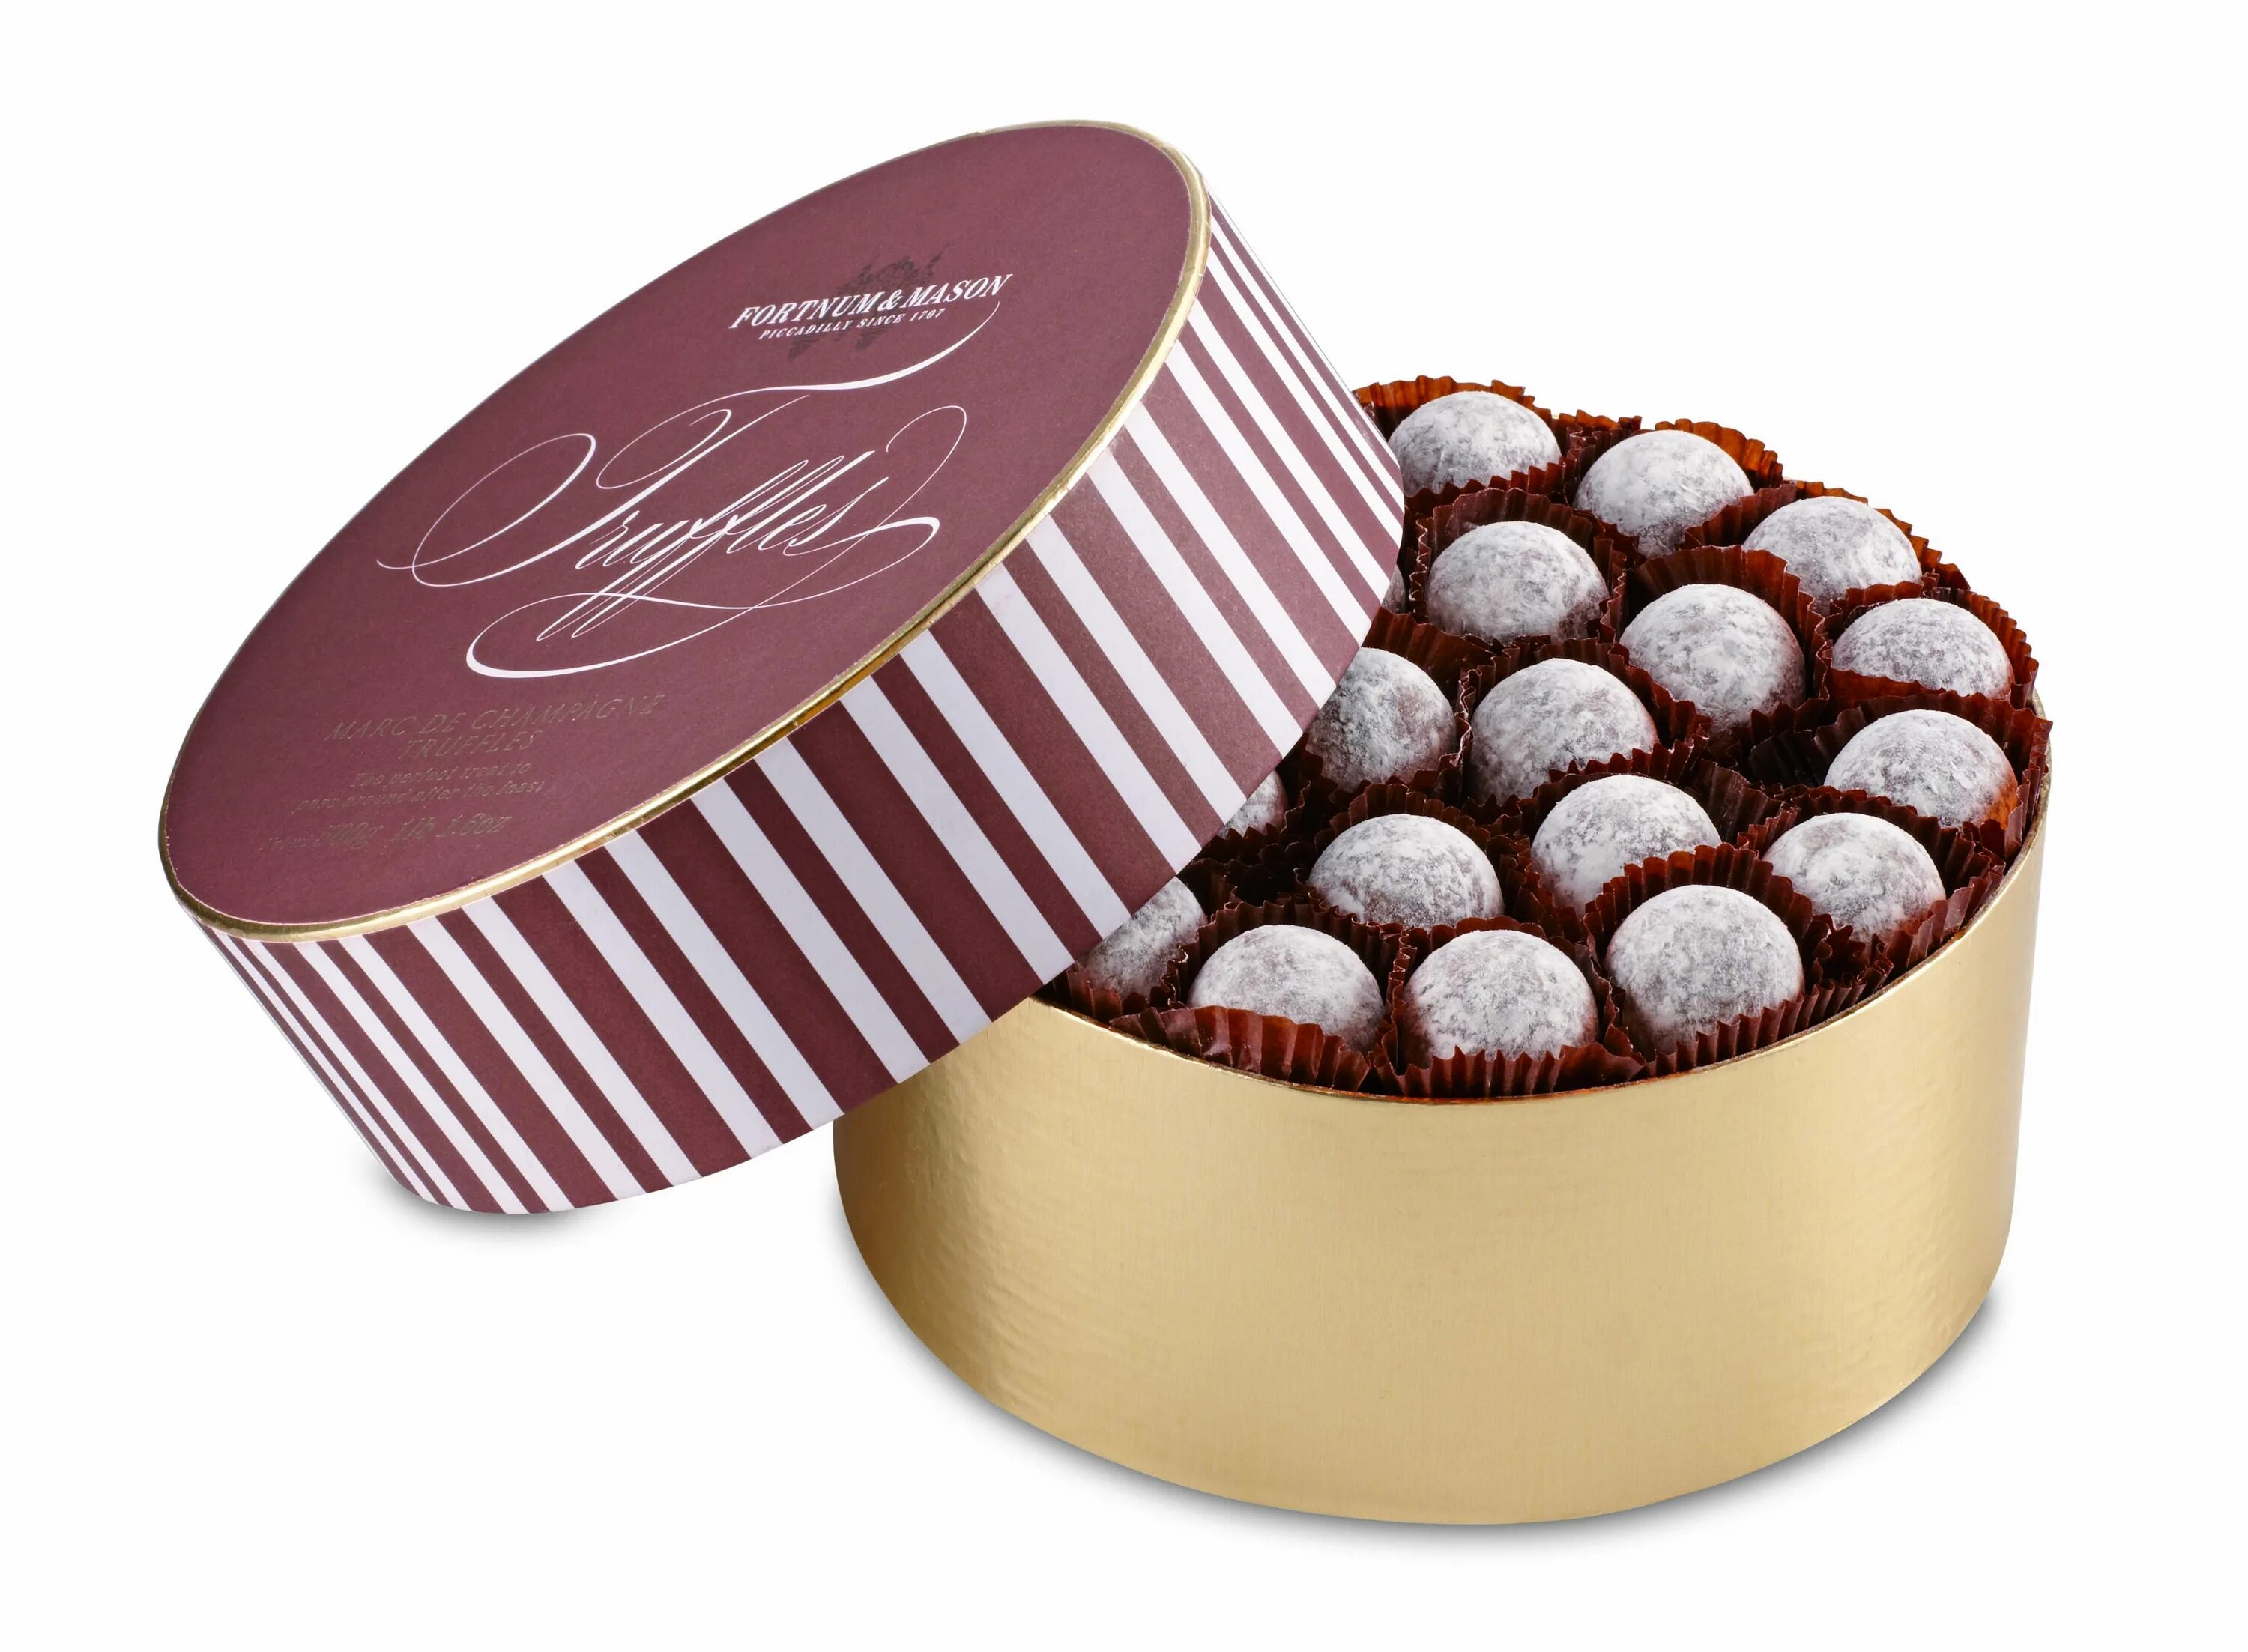 Fortnum Mason шоколад. Круглые конфеты. Шоколадные конфеты. Конфеты шоколадные в коробке. В коробке лежат конфеты 4 вкусов